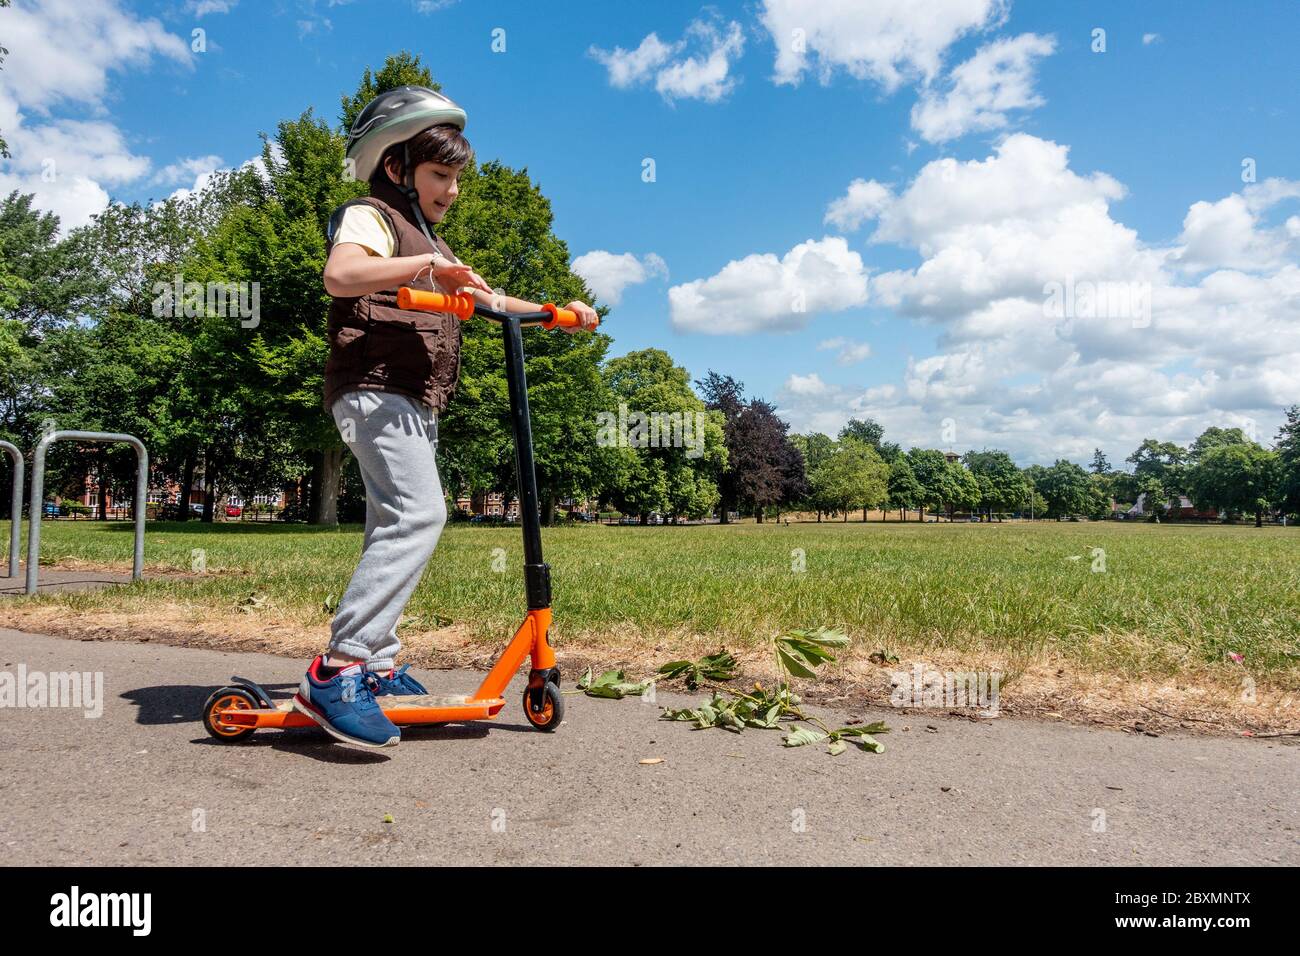 Un jeune garçon joue avec son scooter et le pousse lors d'une journée ensoleillée dans le parc. Ciel bleu et arbres verts. Enfant énergique et actif. Banque D'Images